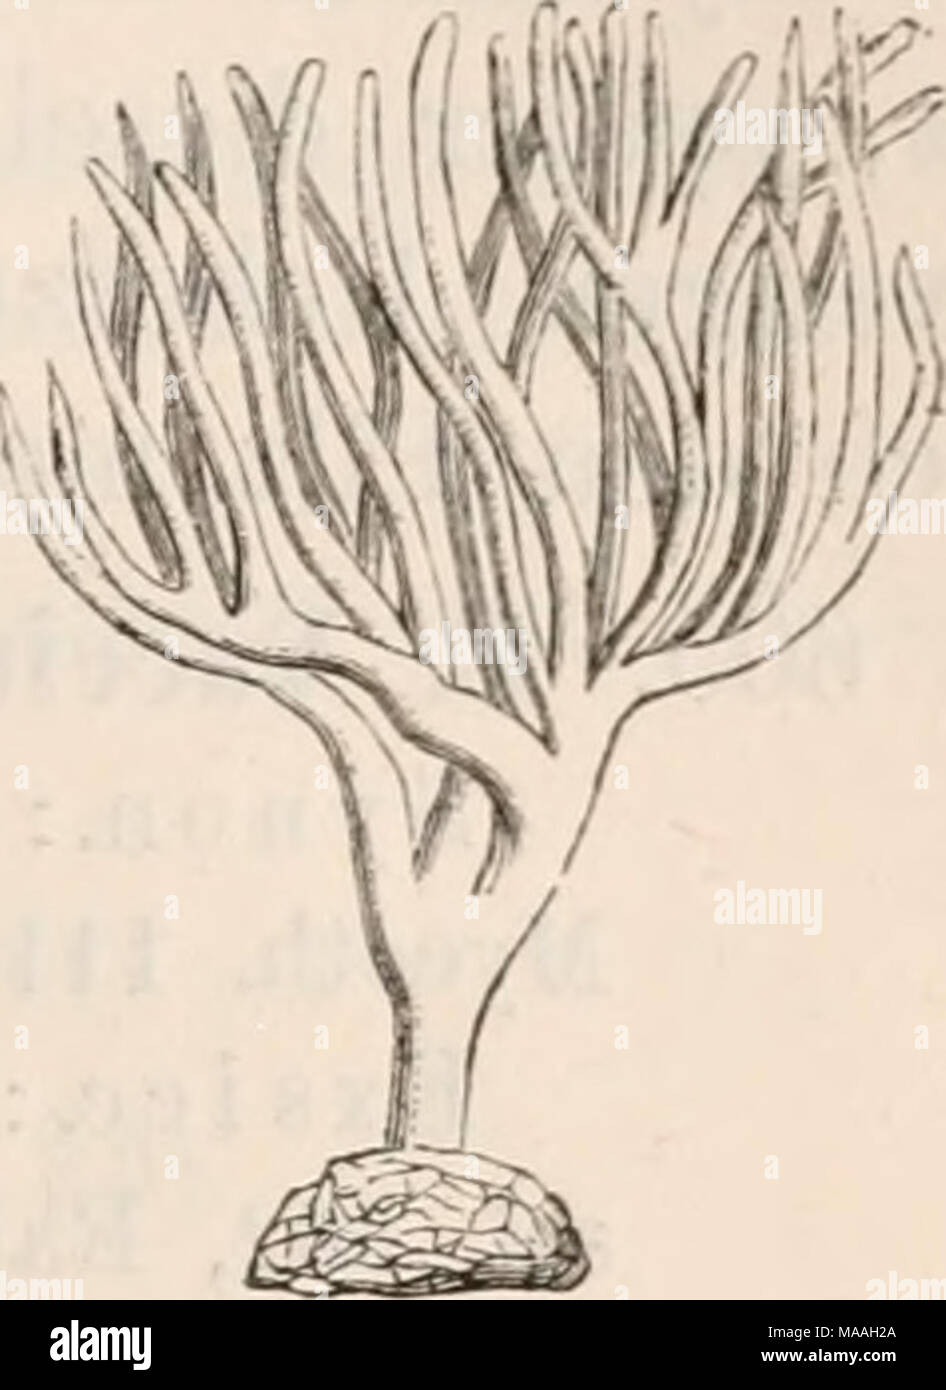 . Dr. L. Rabenhorst's Kryptogamen-Flora von Deutschland, Oesterreich und der Schweiz . 1 2 Fig. 1. Thelephora laciniata. Fig. 2. Thelepliora palraata, kleineres Exem- plar; beide in natürlicher Grösse. Craterellus. F. fleischig oder häutig, meist trichter- oder trompetenförmig; Hymeniiuii imterseits, glatt, runzlig oder gerippt. Stock Photo